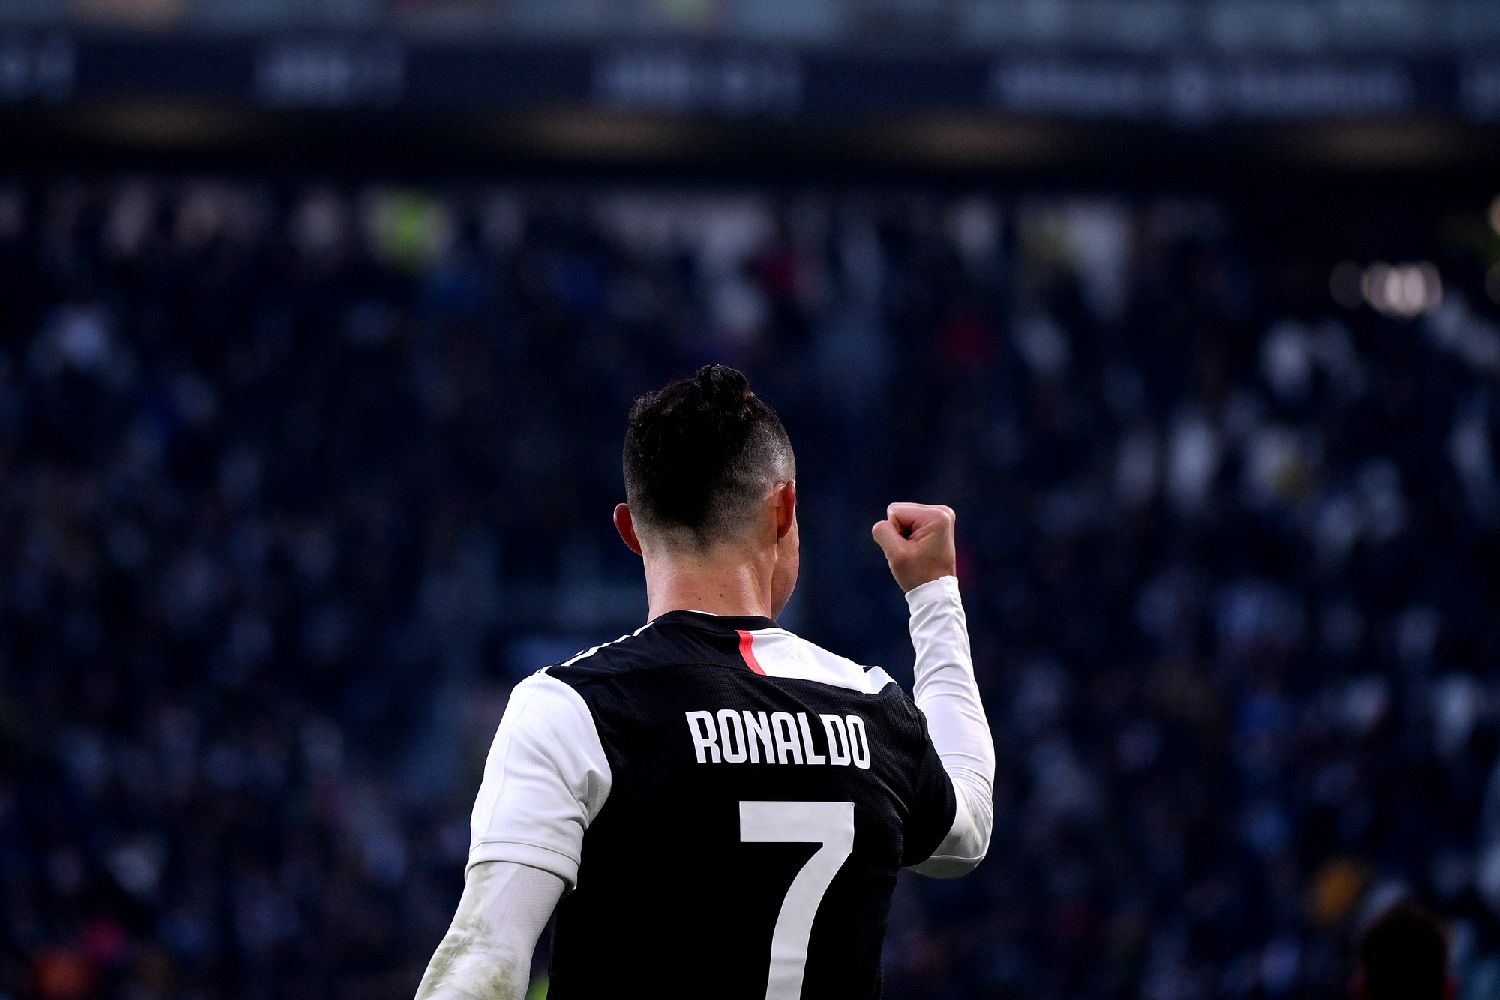 Ροναλντ Ronaldo